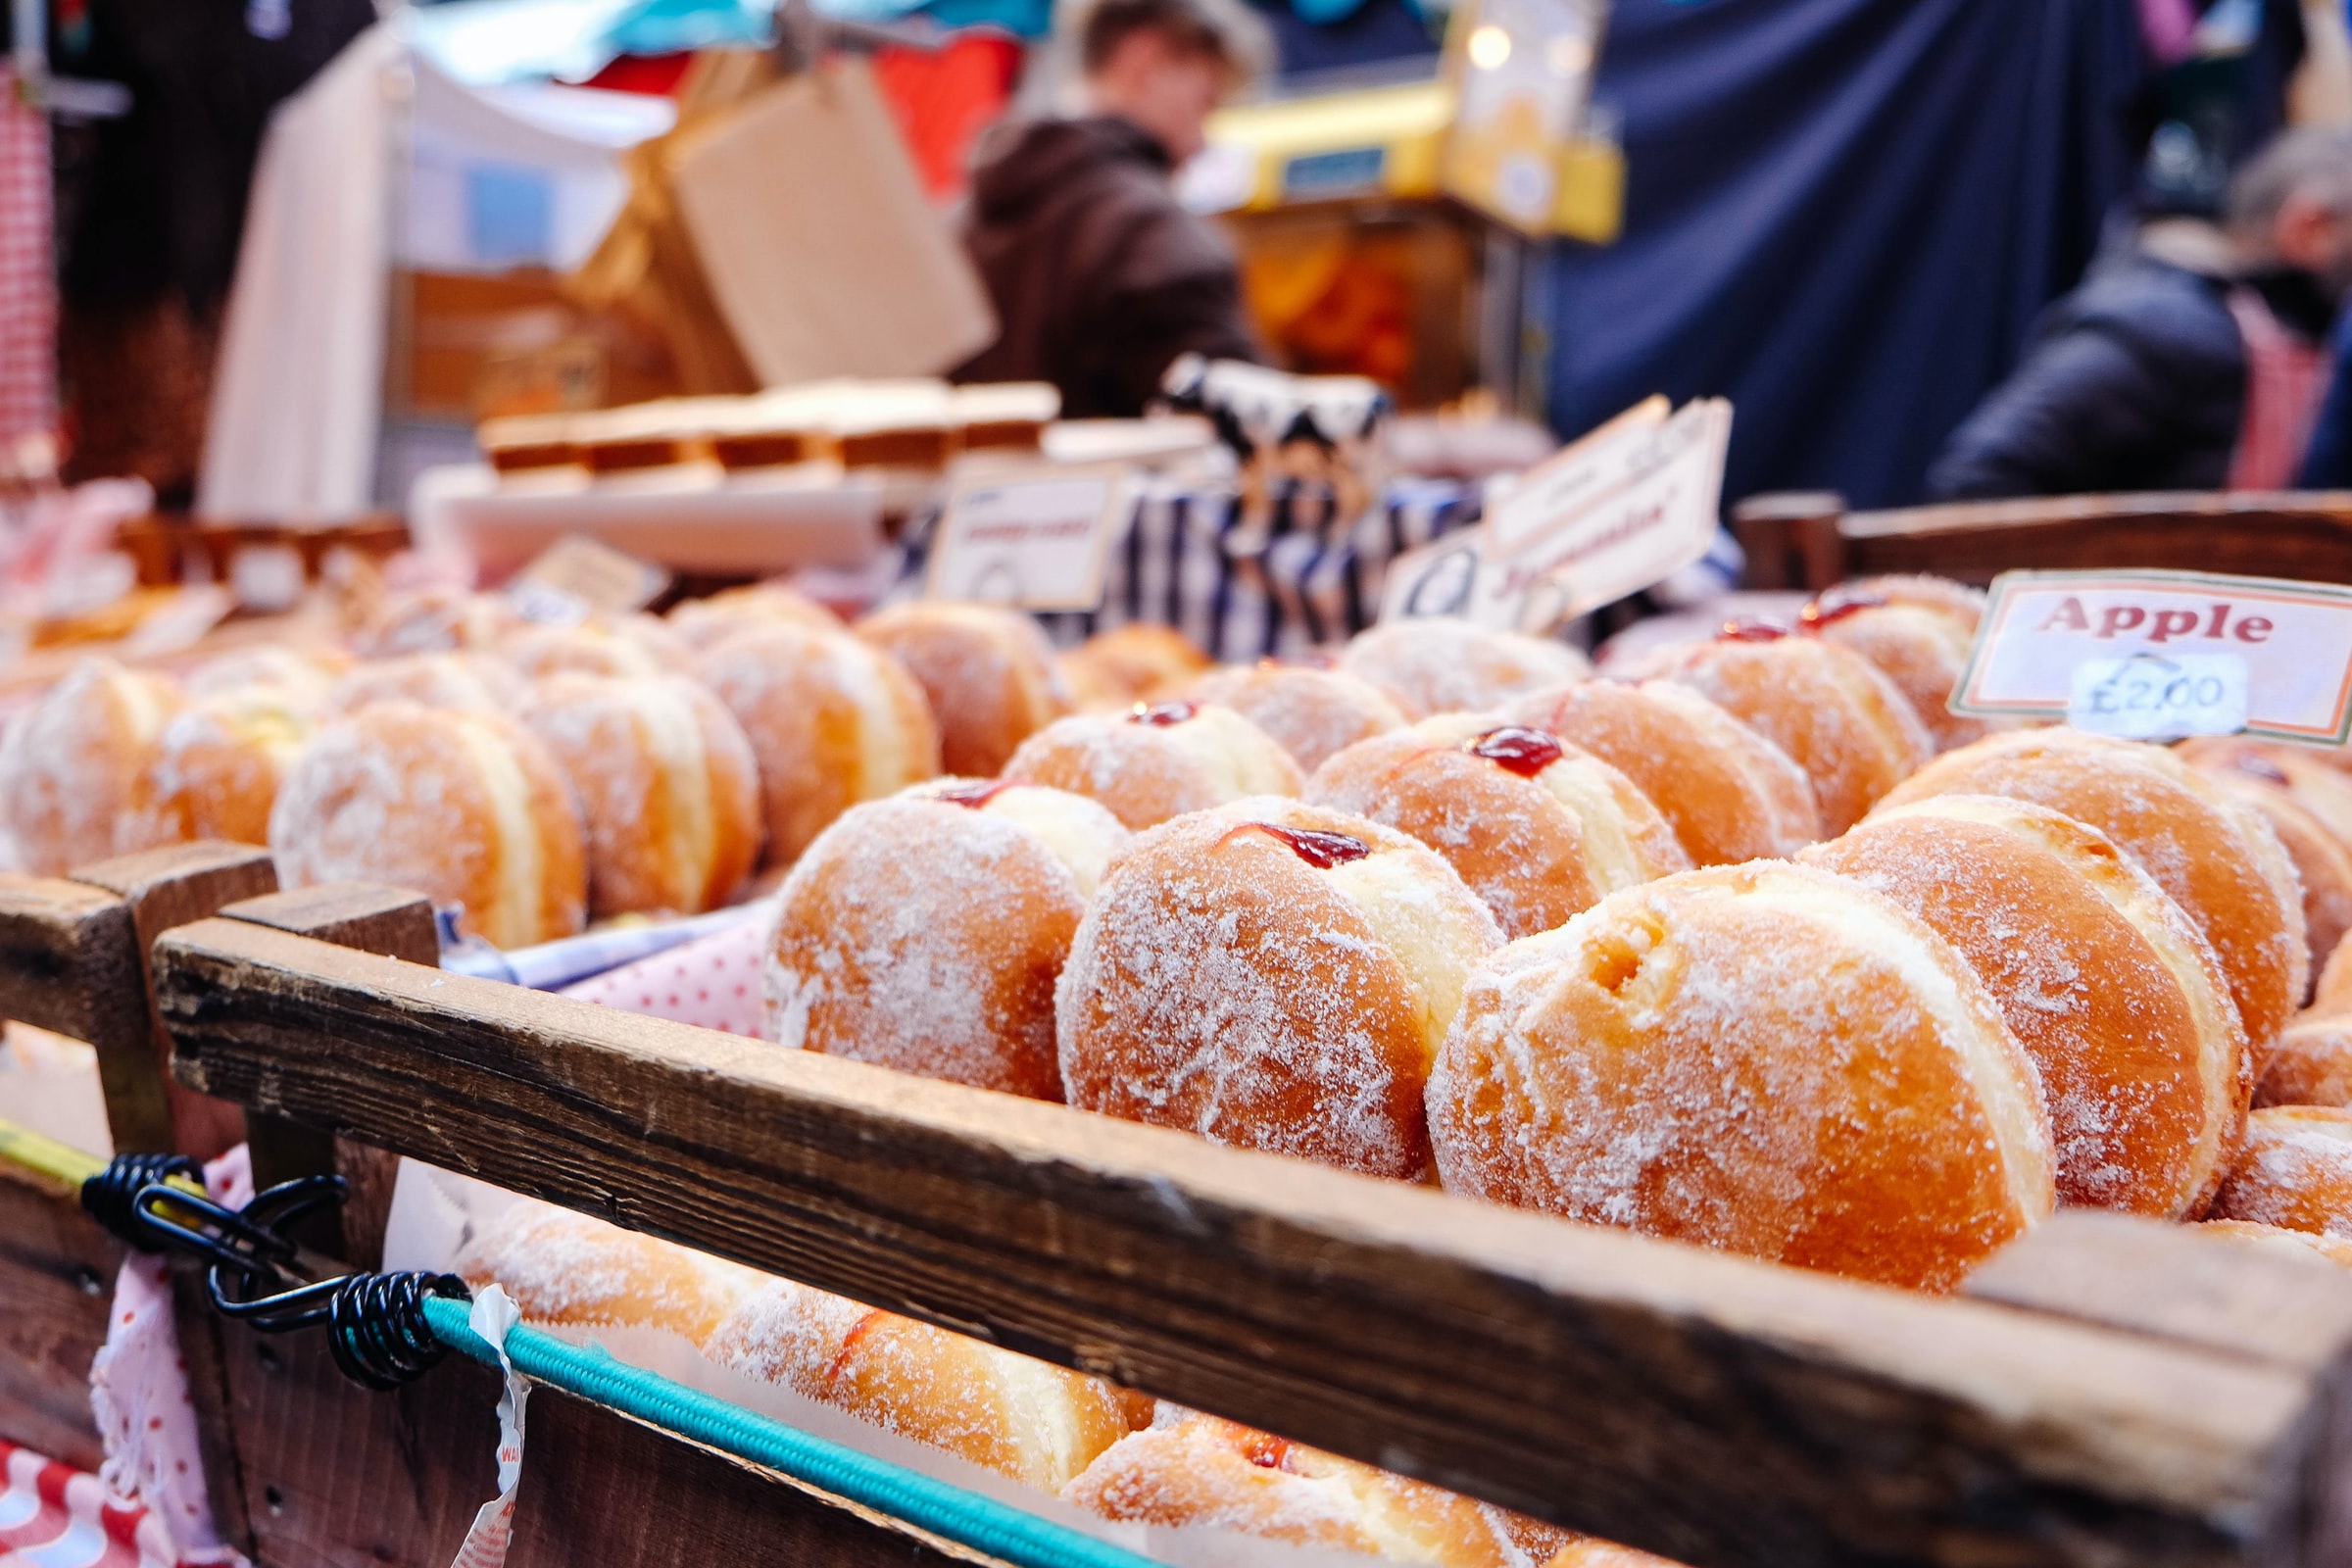 Jelly doughnuts sold for Jewish holiday Hanukkah celebration